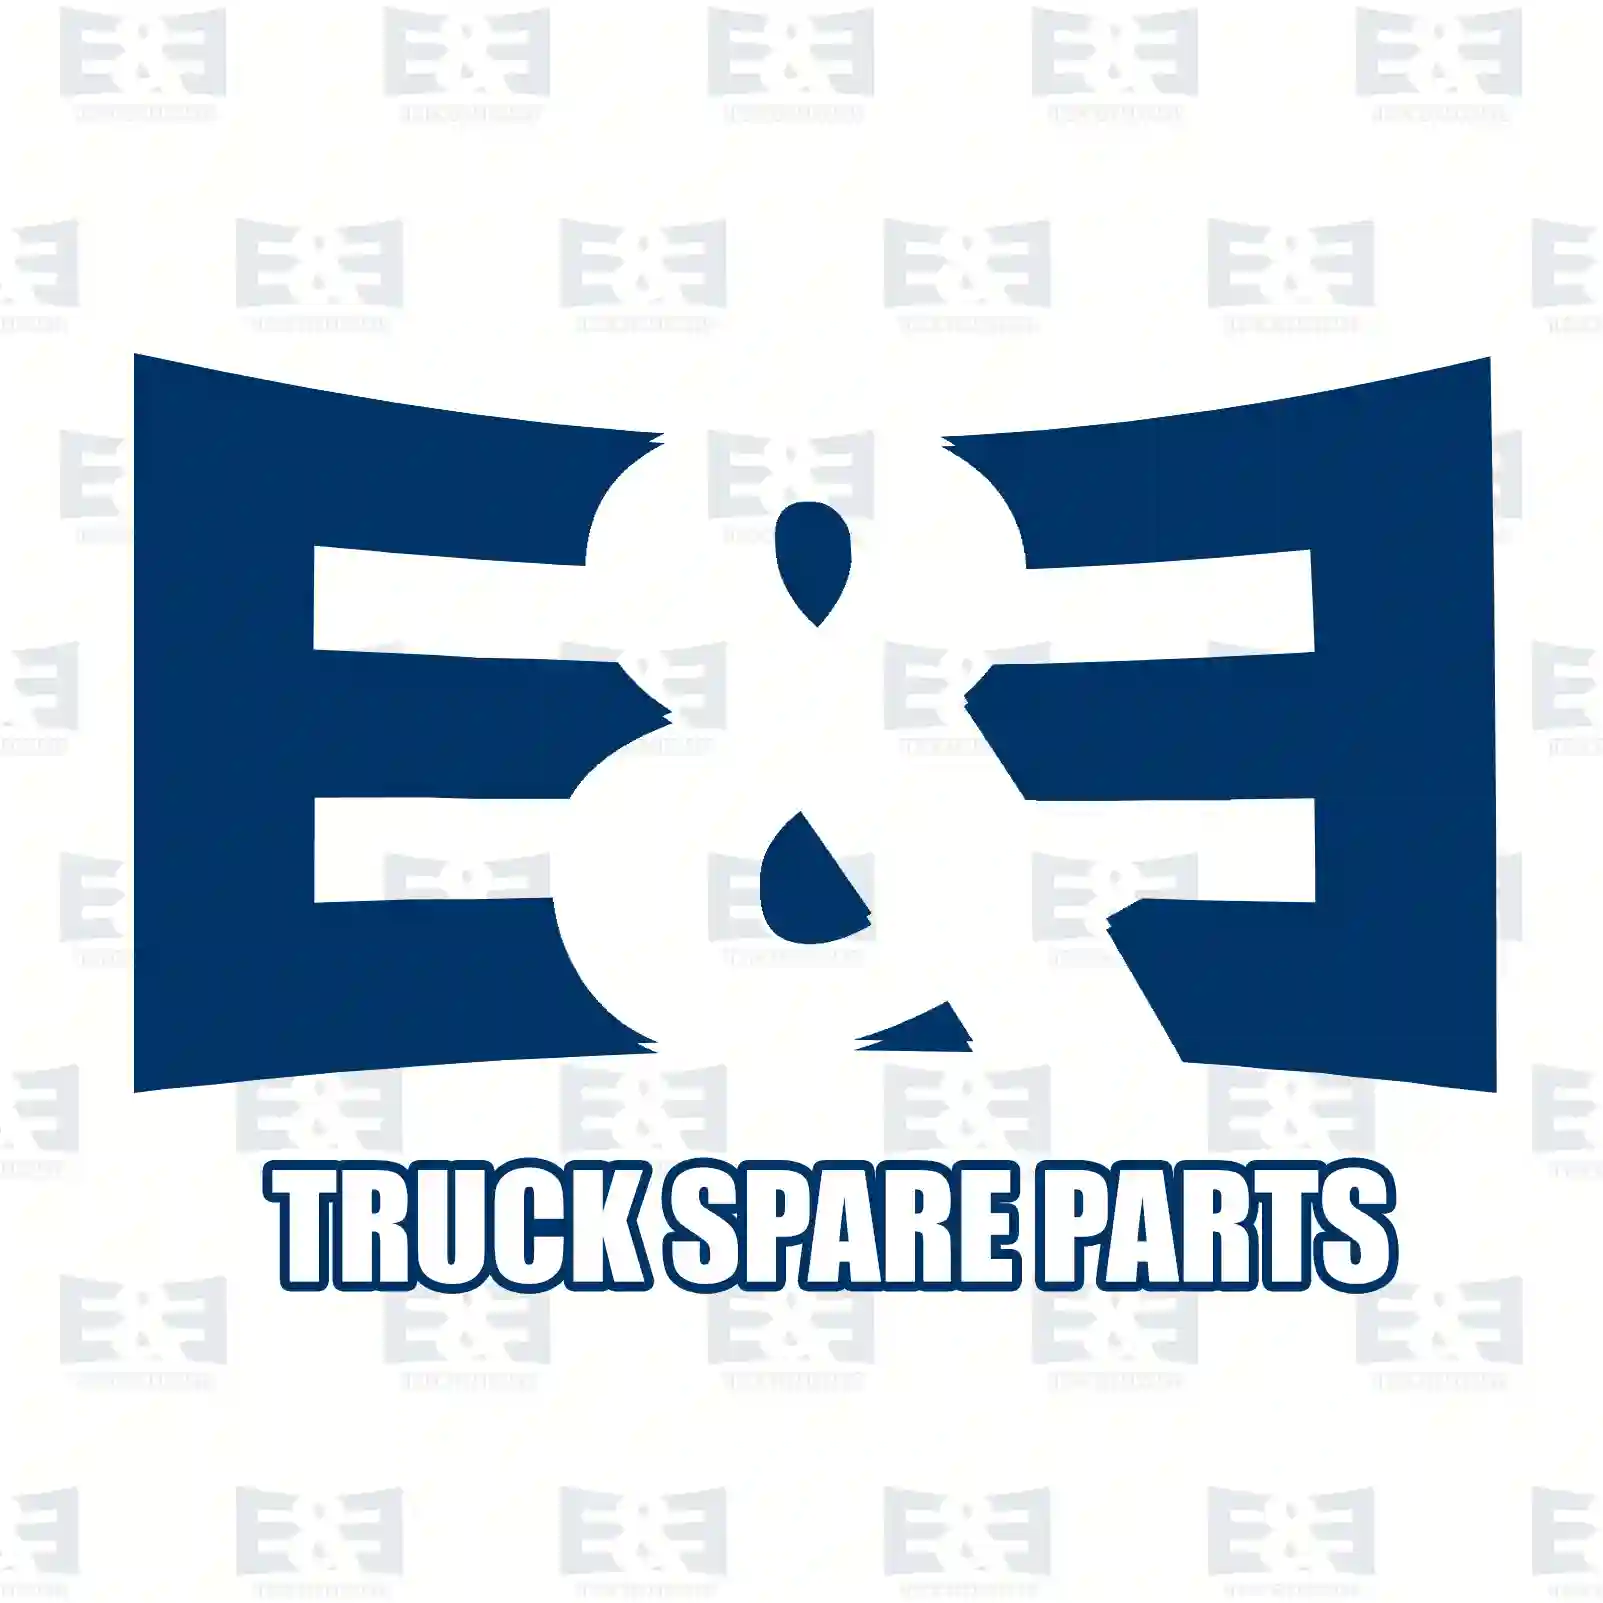 Rubber buffer, engine suspension, front, 2E2207662, 5000704265, 5000704265, ZG40104-0008, ||  2E2207662 E&E Truck Spare Parts | Truck Spare Parts, Auotomotive Spare Parts Rubber buffer, engine suspension, front, 2E2207662, 5000704265, 5000704265, ZG40104-0008, ||  2E2207662 E&E Truck Spare Parts | Truck Spare Parts, Auotomotive Spare Parts